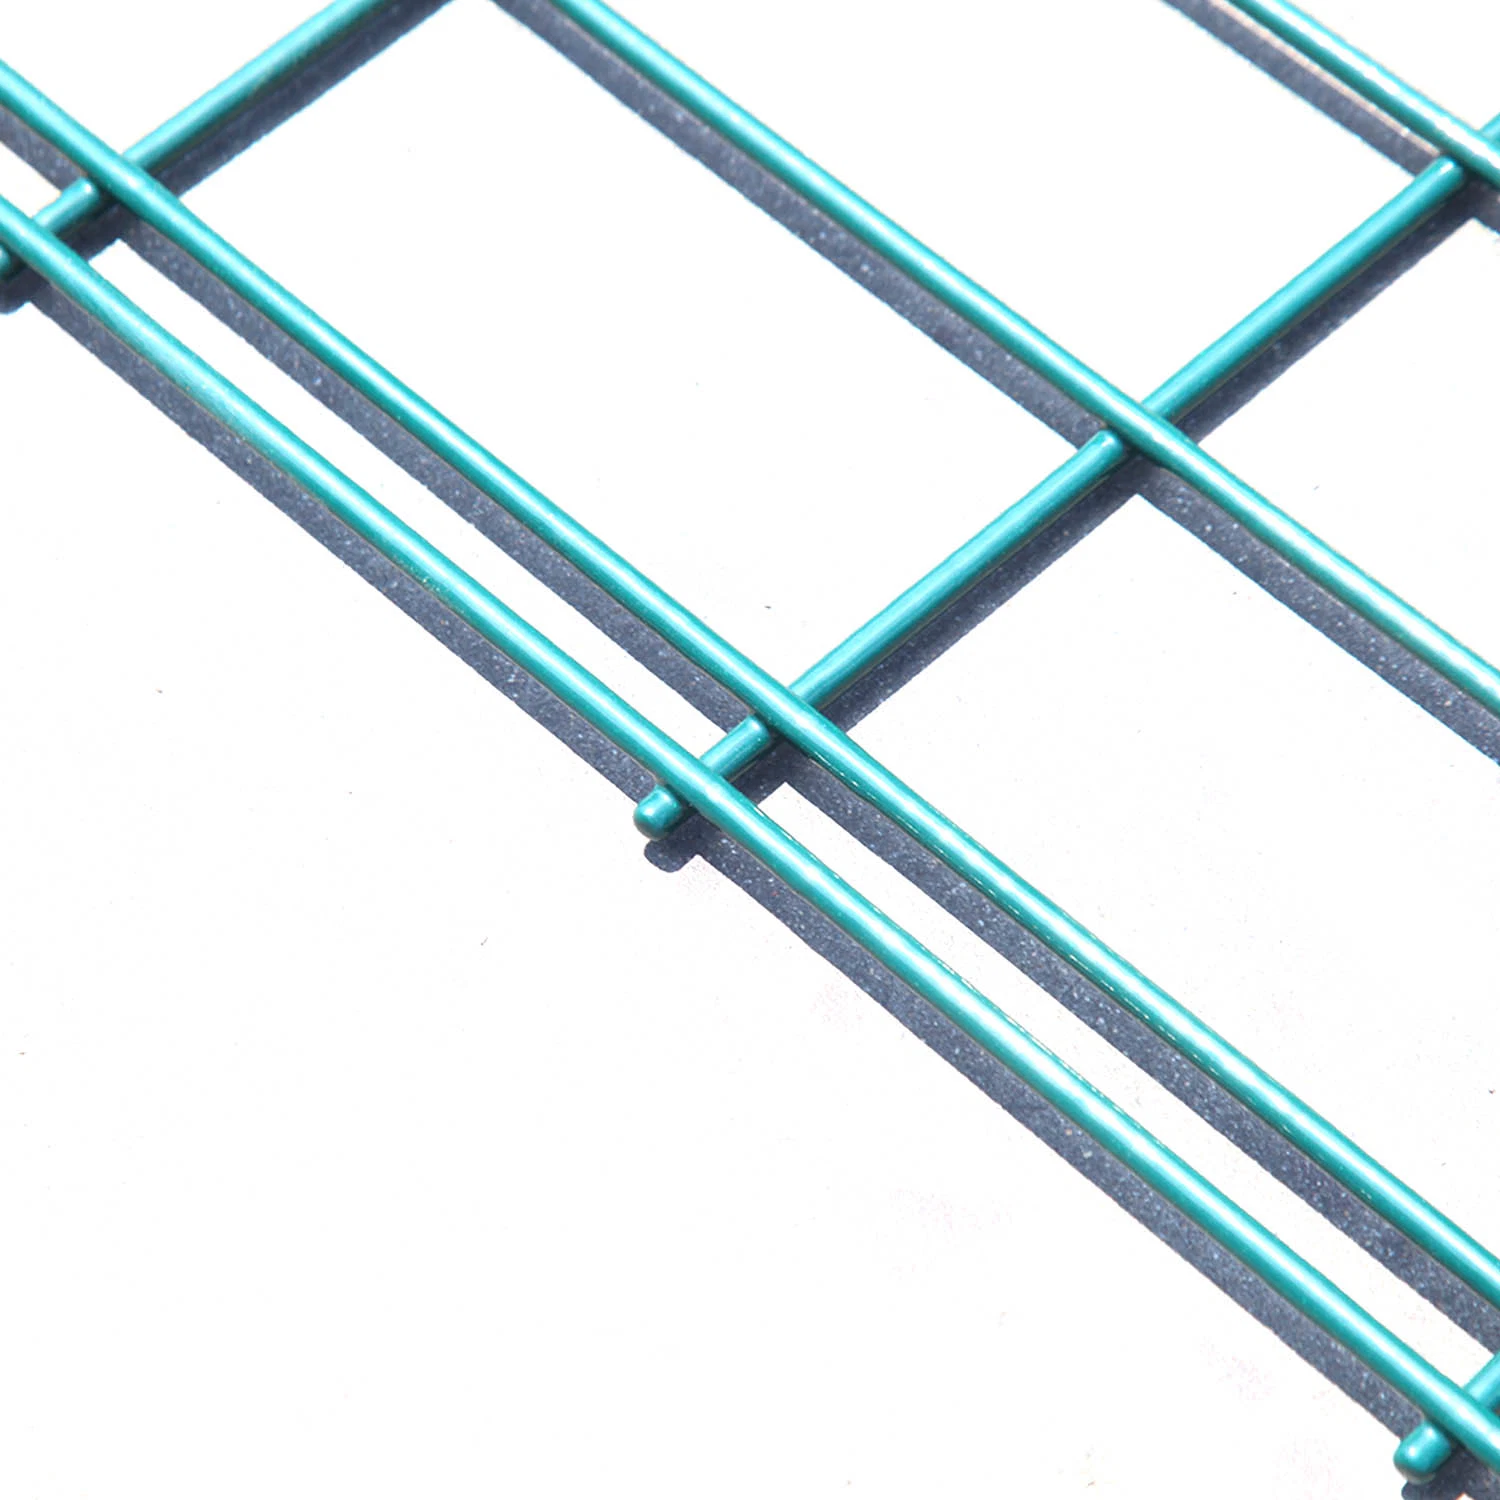 3D Panel Fence/3D Curved Fence/Wire Fence/China 3D Curved wire Malha vedação/painéis de malha com perfil 3D V/malha de arame soldada curvilínea 3D Cerca